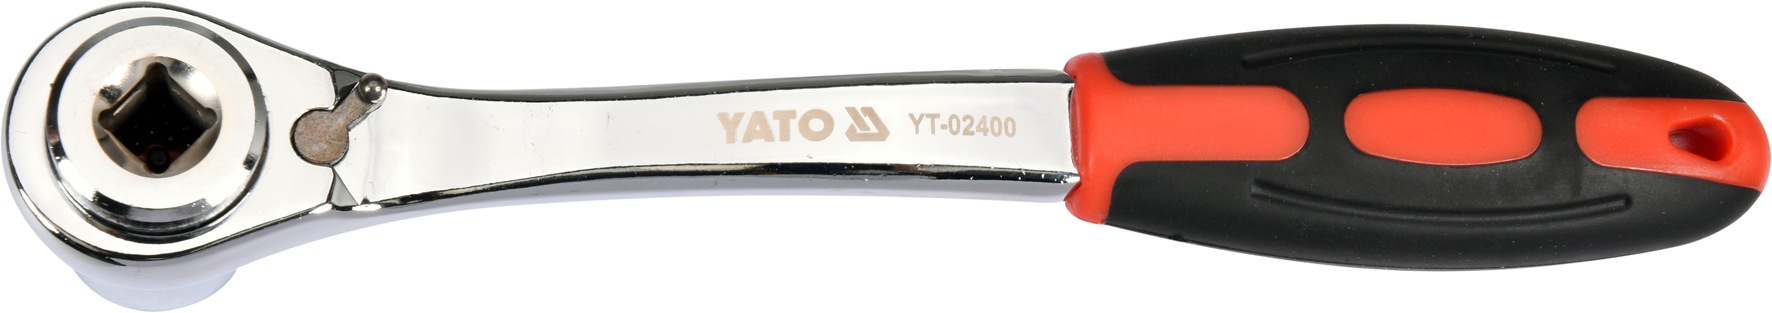 Ráčna s univerzálním nástavcem 8-19 mm Yato YT-02400